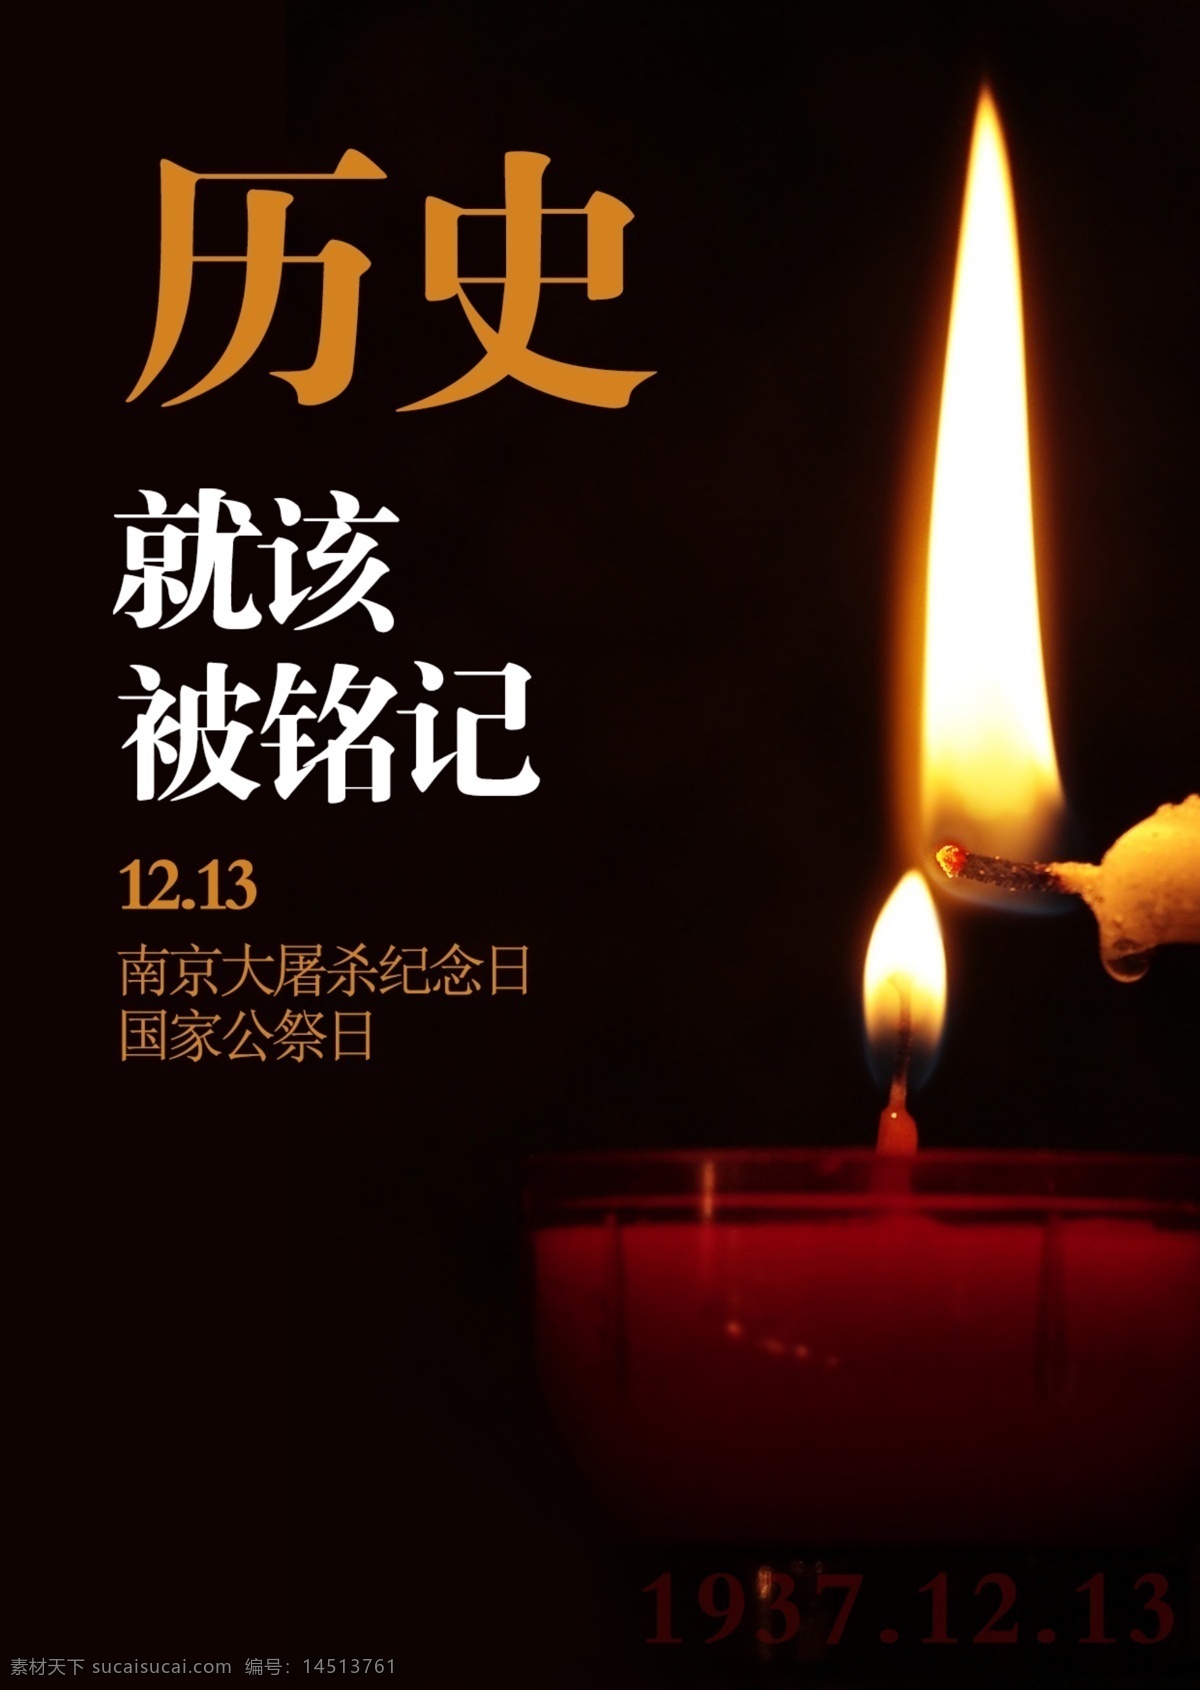 南京大屠杀 纪念日 国家 公祭 日 南京 纪念 爱国 蜡烛 历史 大屠杀 哀悼 中国 公祭日